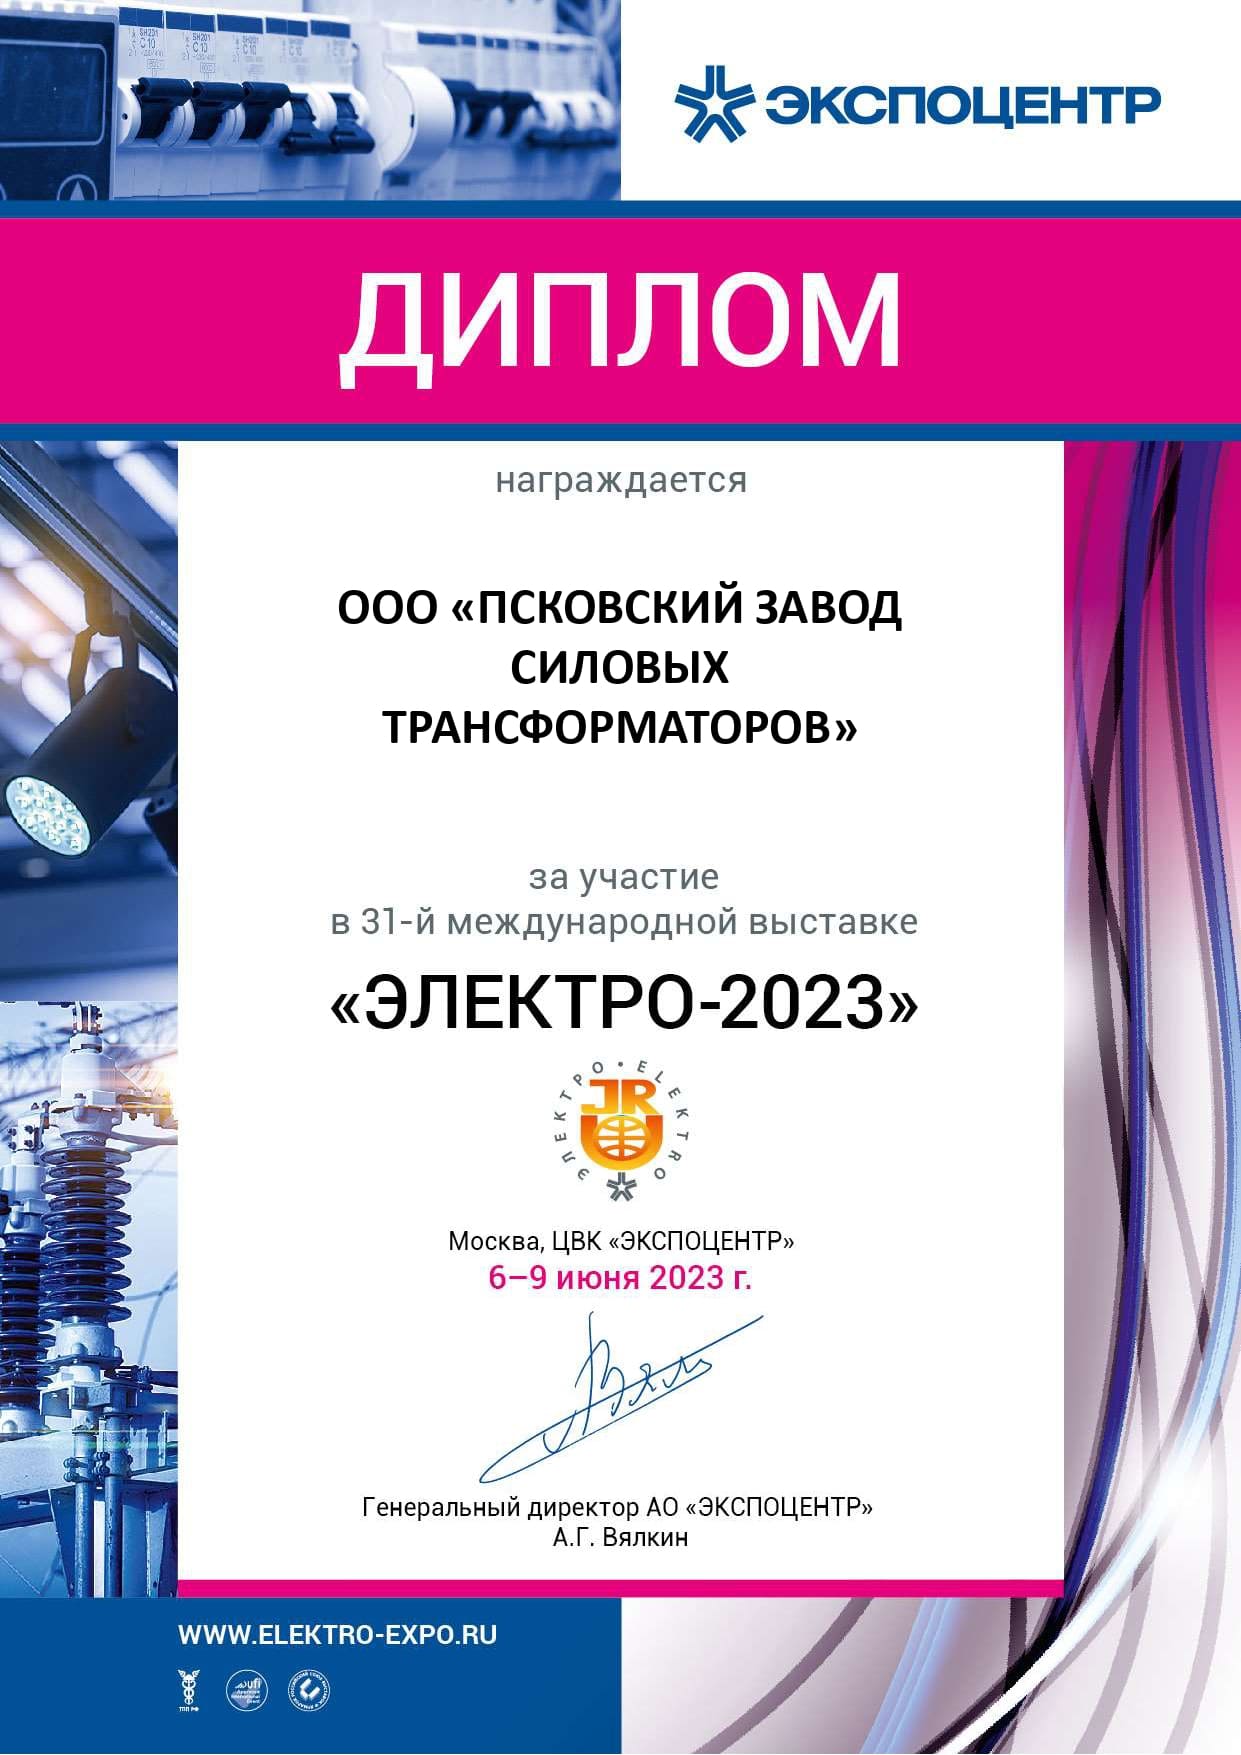 Участие в 31-й международной выставке ЭЛЕКТРО-2023. Интервью представителя Псковского завода силовых трансформаторов.